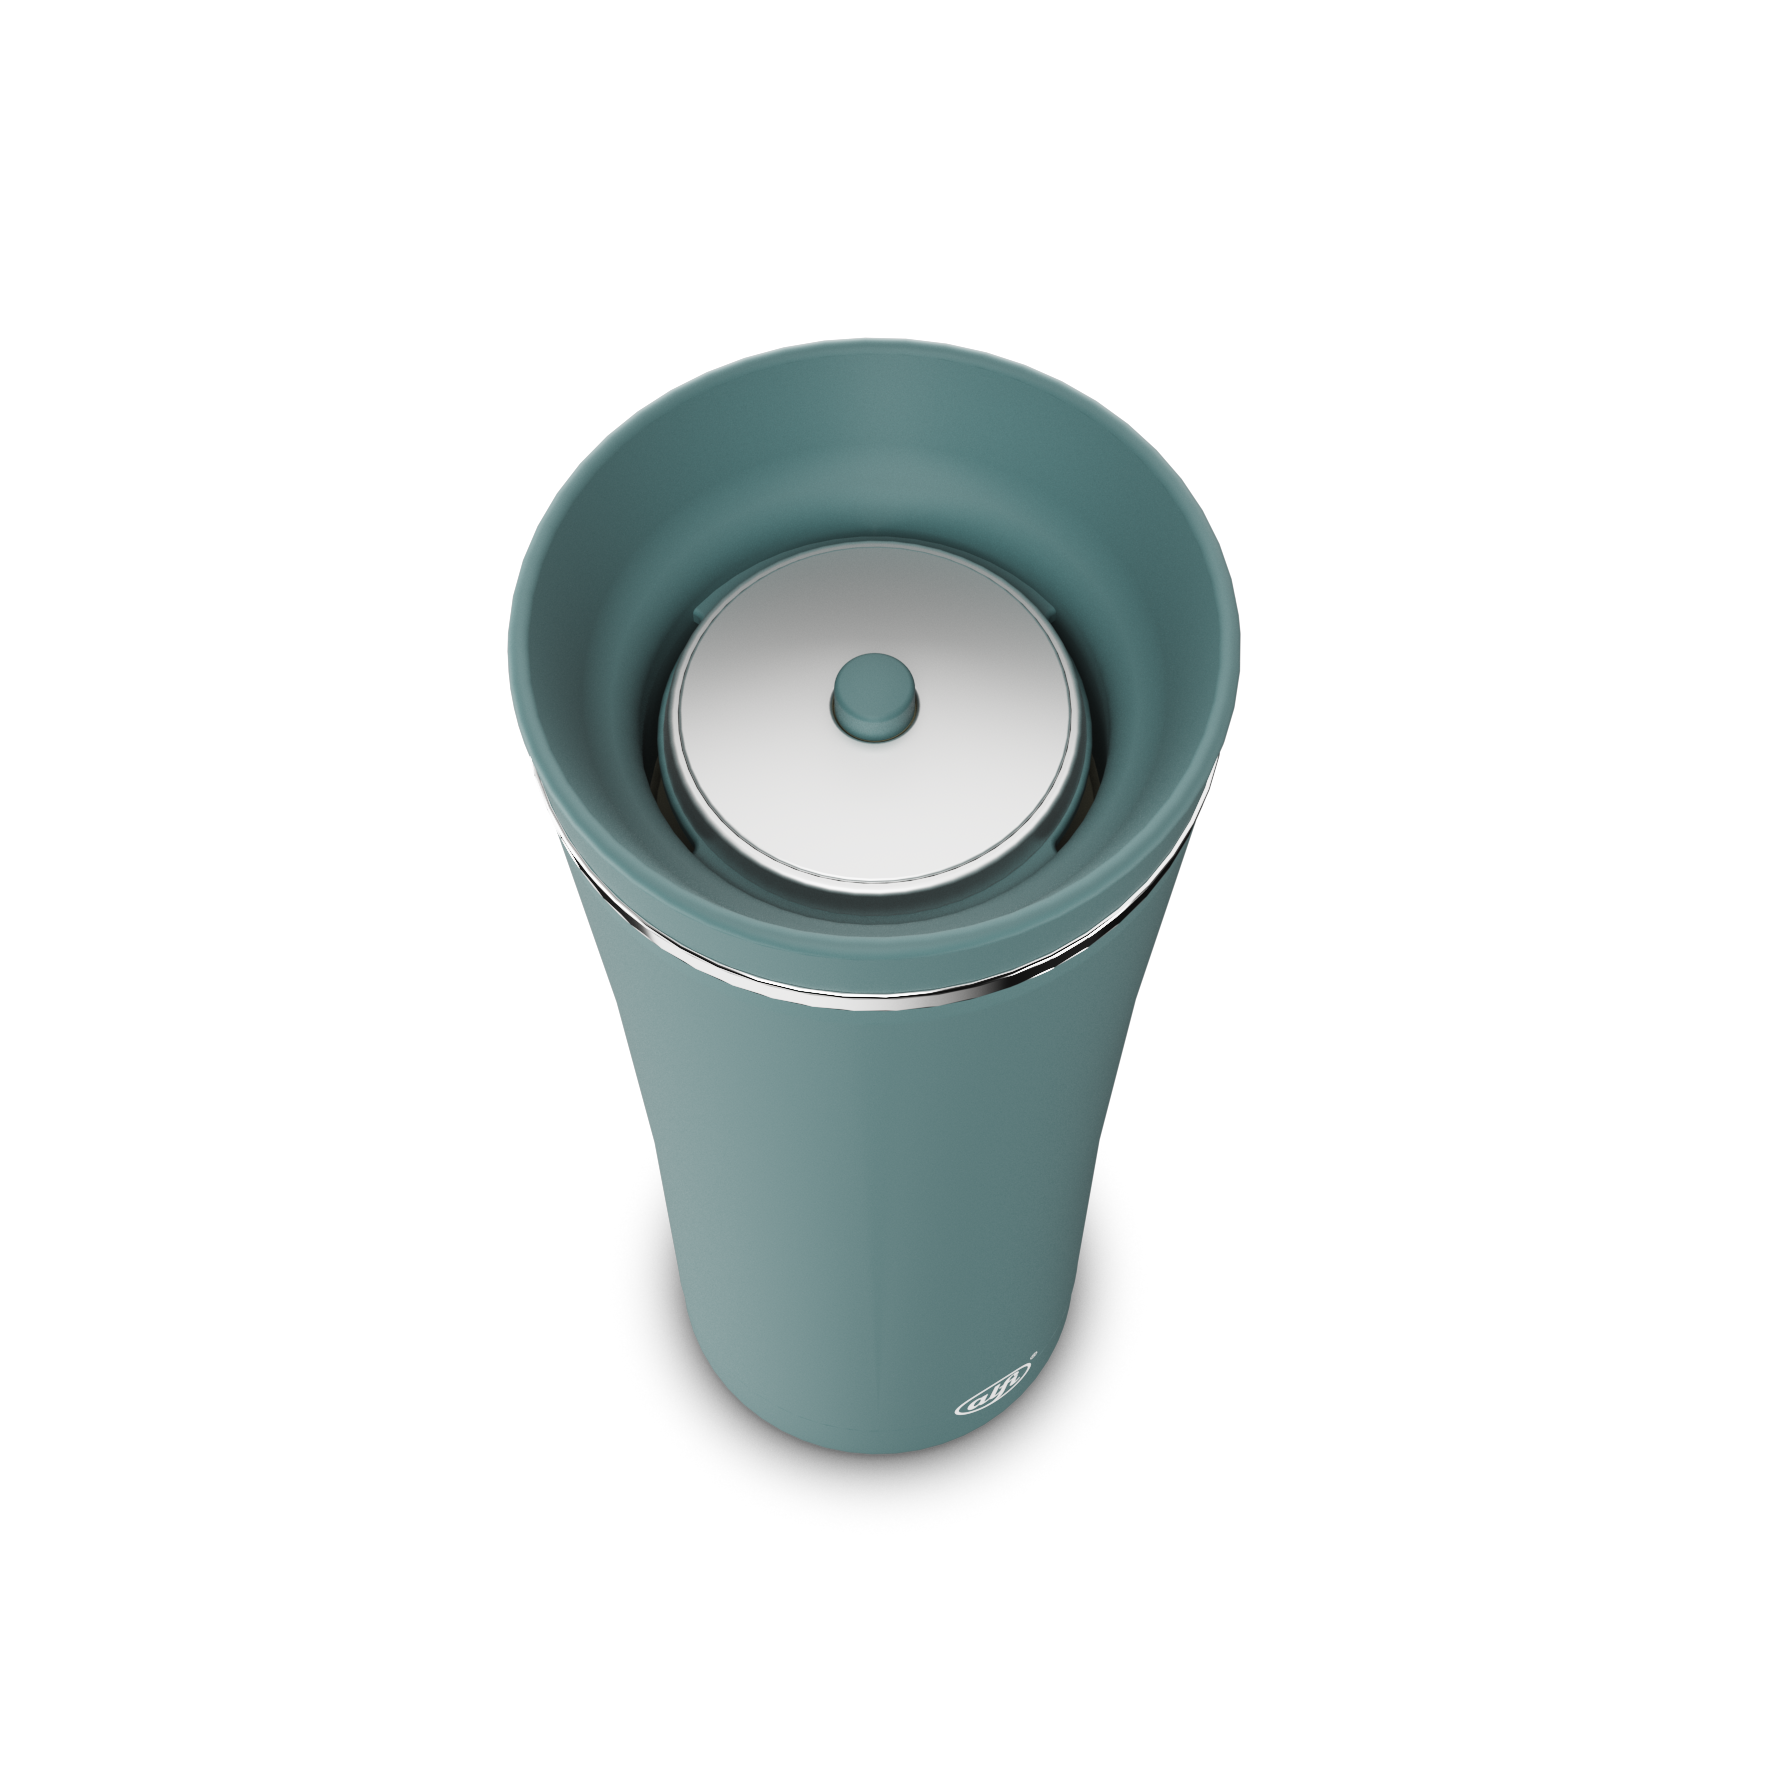 Mug 0,5 Alfi Liter Kaufen Tea ✓ Balance